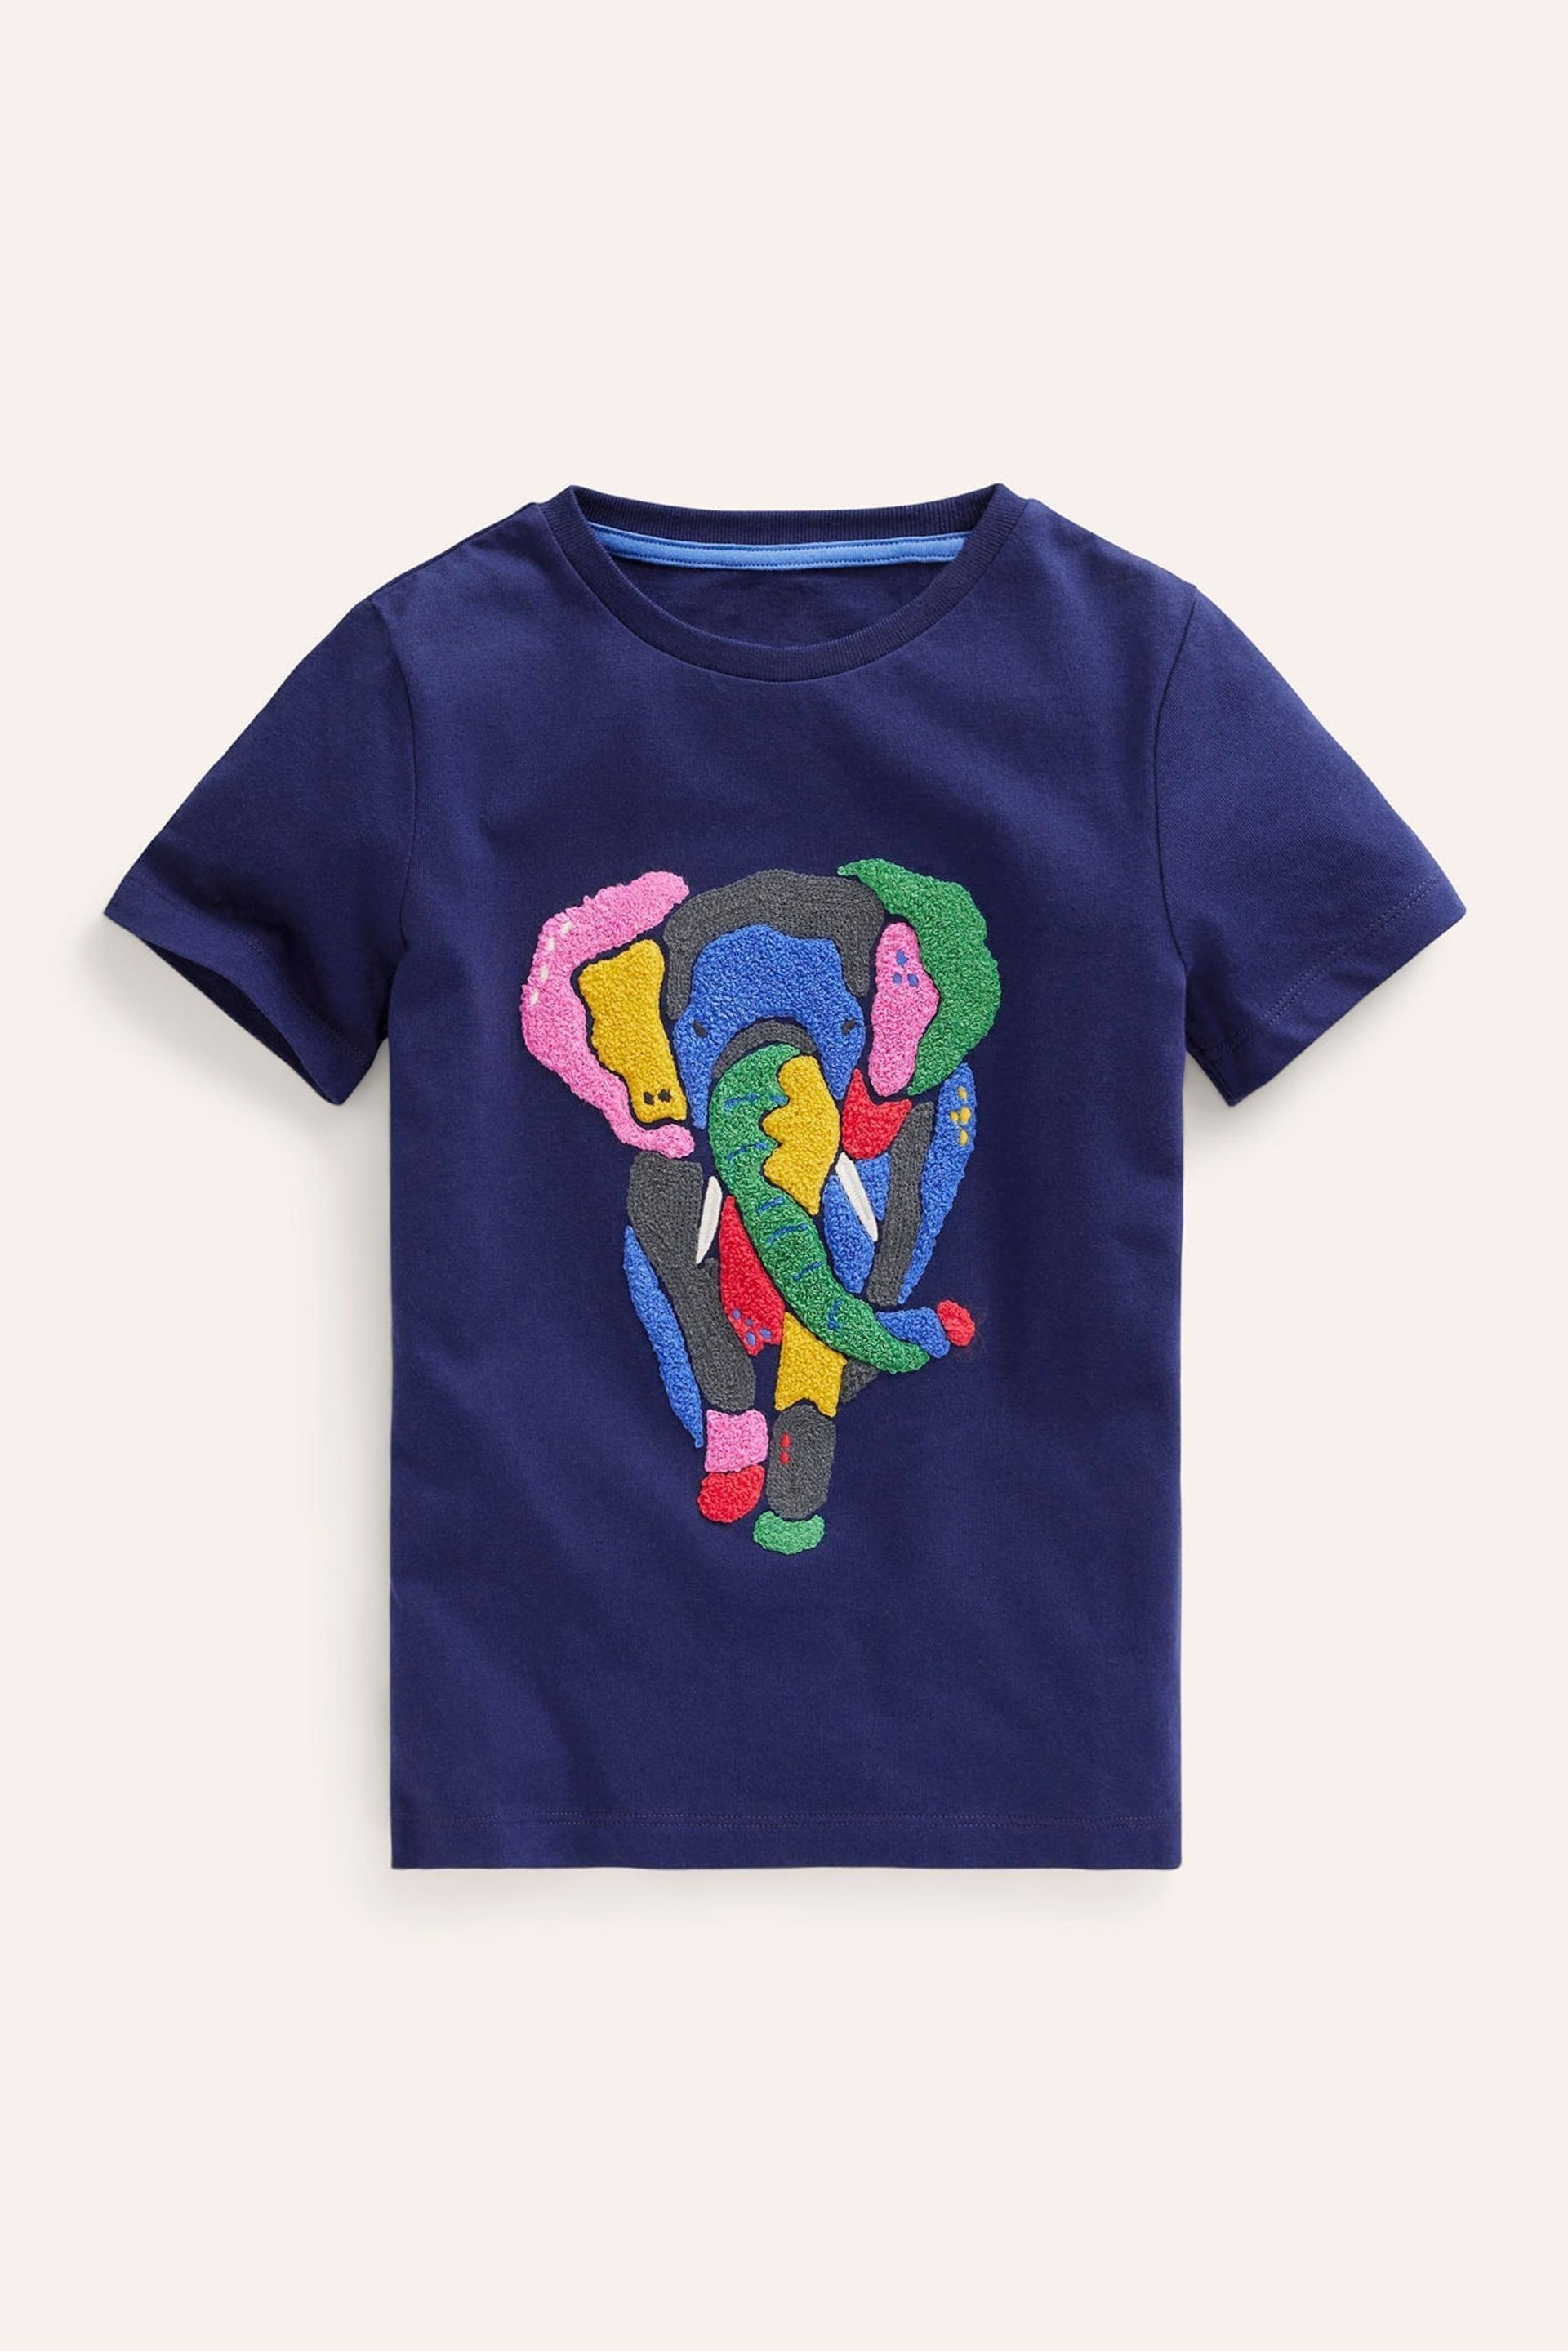 Boden Blue Dark Chainstitch Animal Print T-Shirt - Image 2 of 4